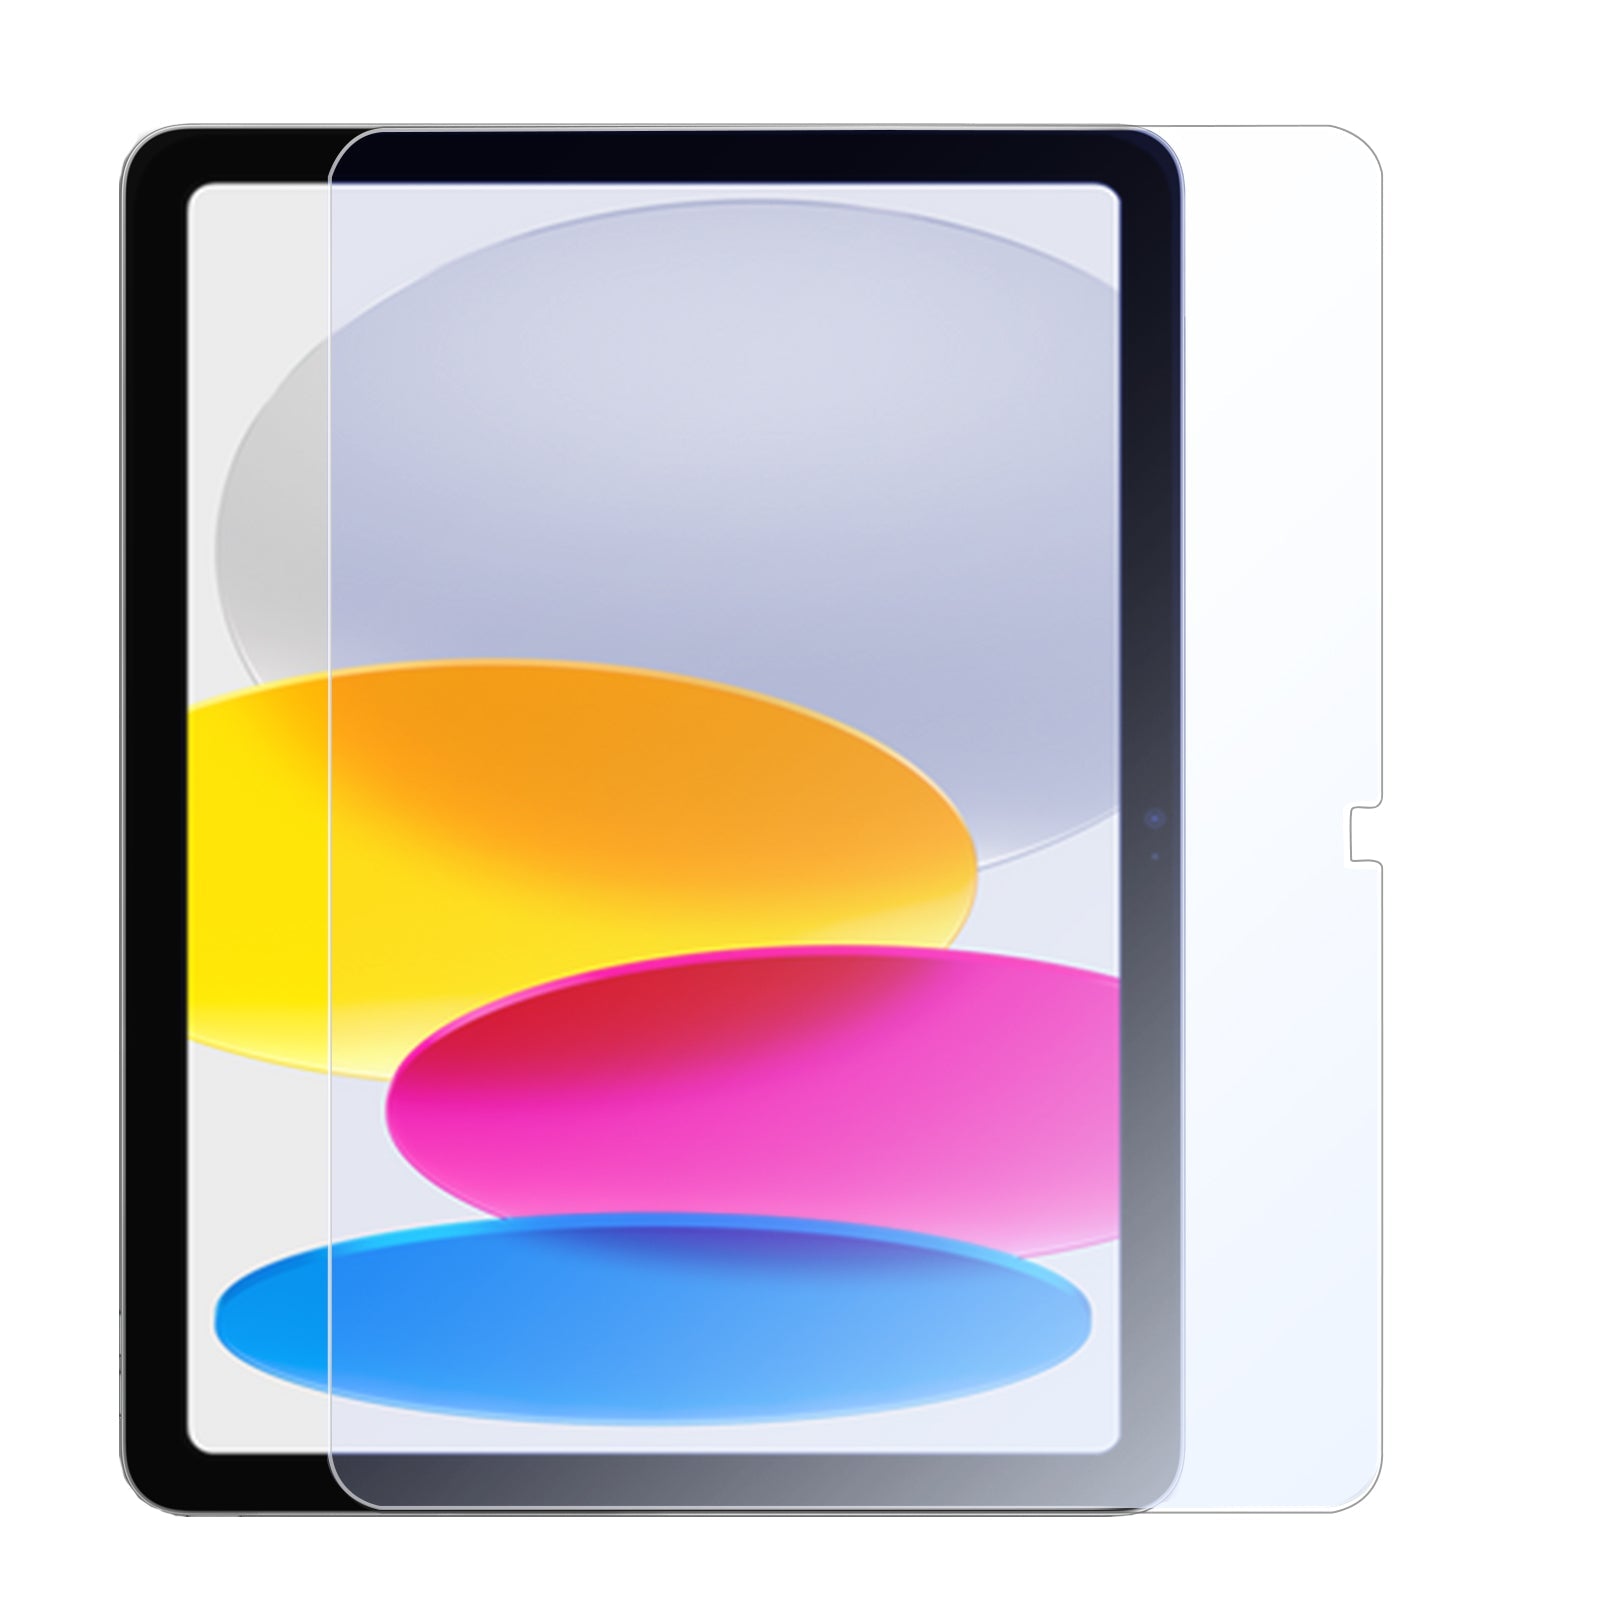 Protecteur d'écran anti lumière bleue pour la série iPad